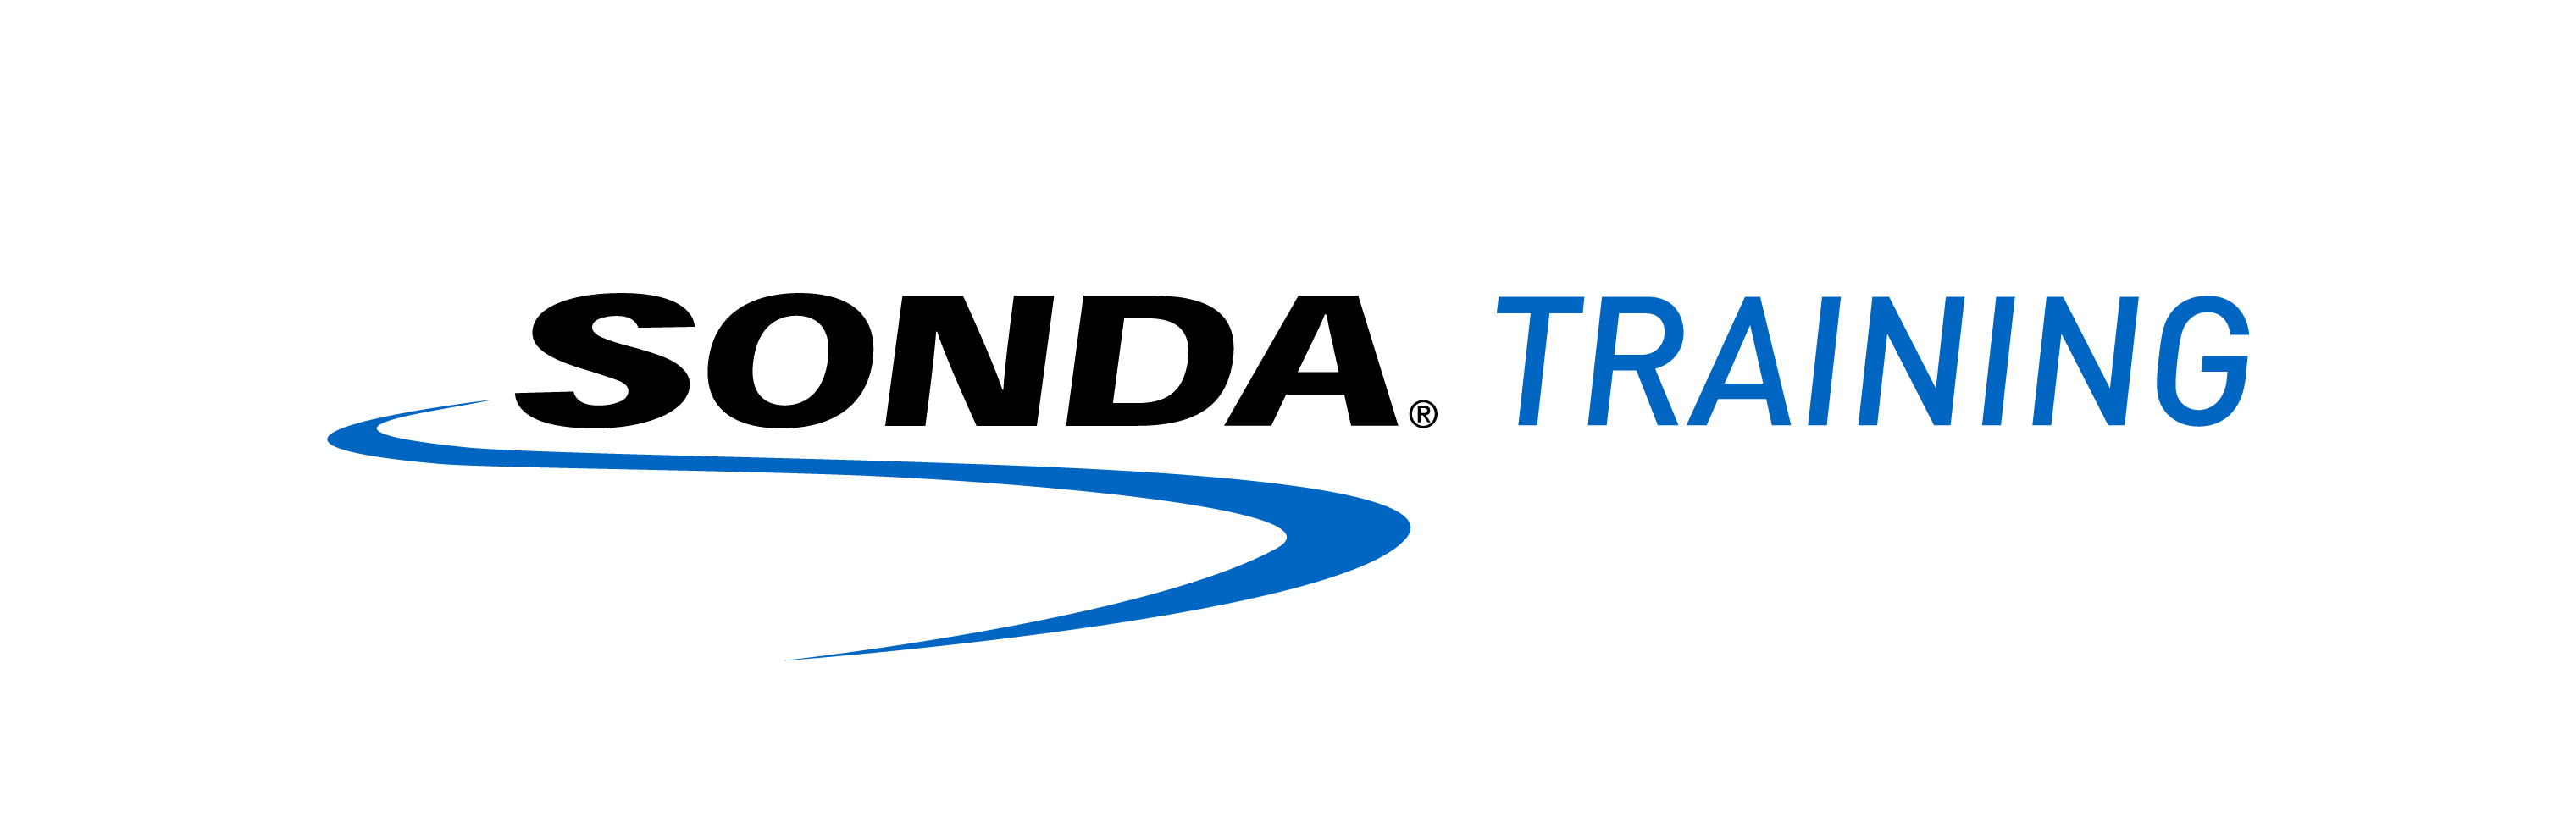 Logo SONDA Educación S.A. - SONDA TRAINING